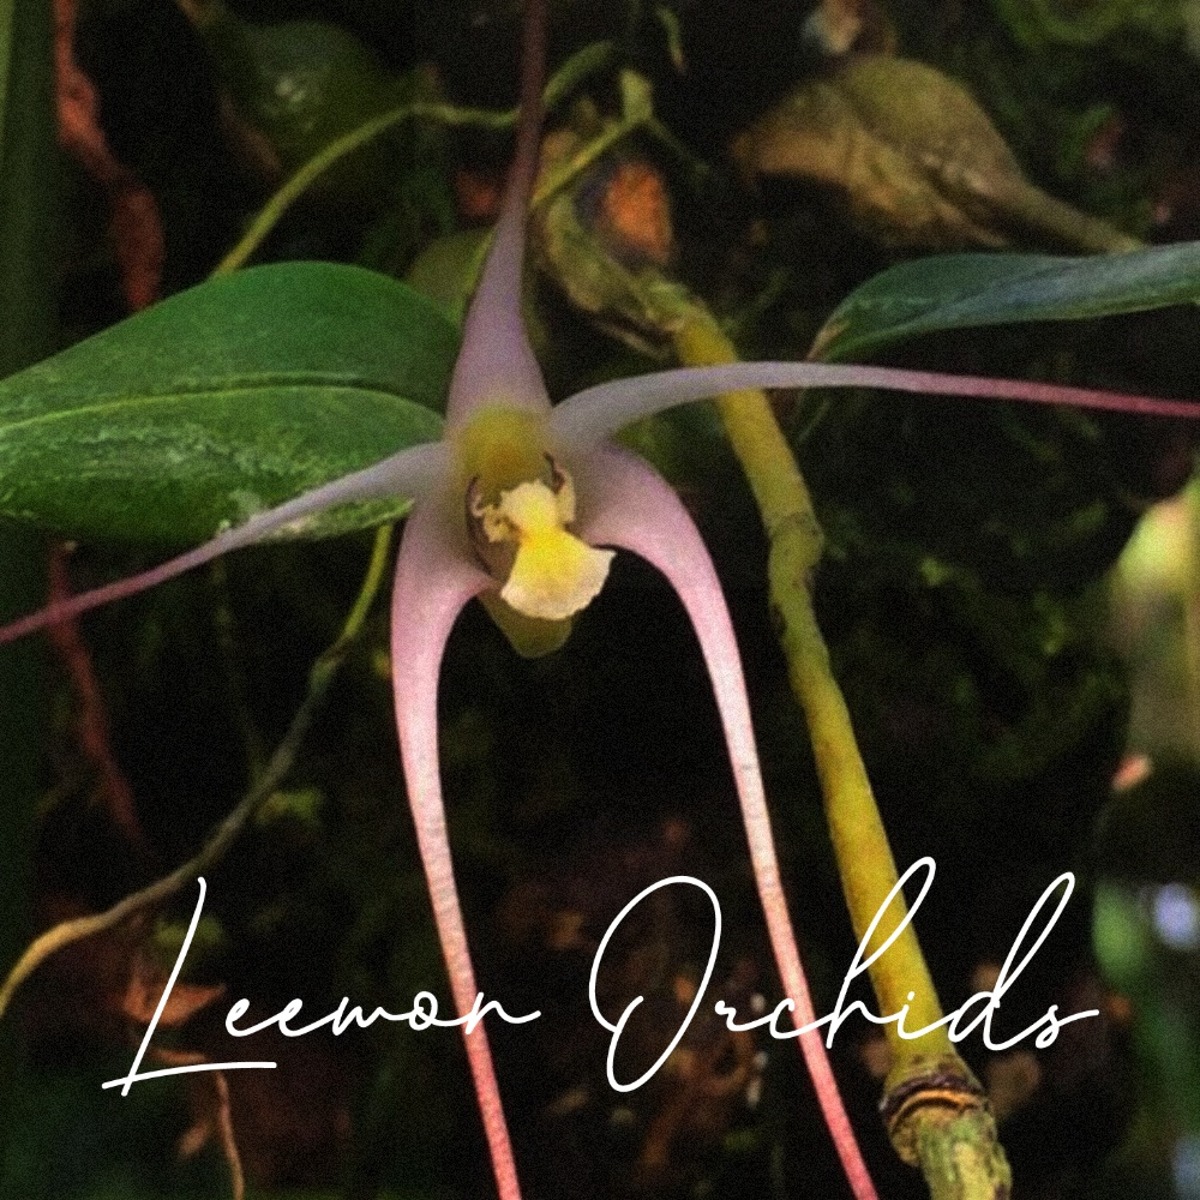 덴드로비움 티퓰라 Dendrobium tipula (일명: 하루살이난초/온라인 한정재고: 2)